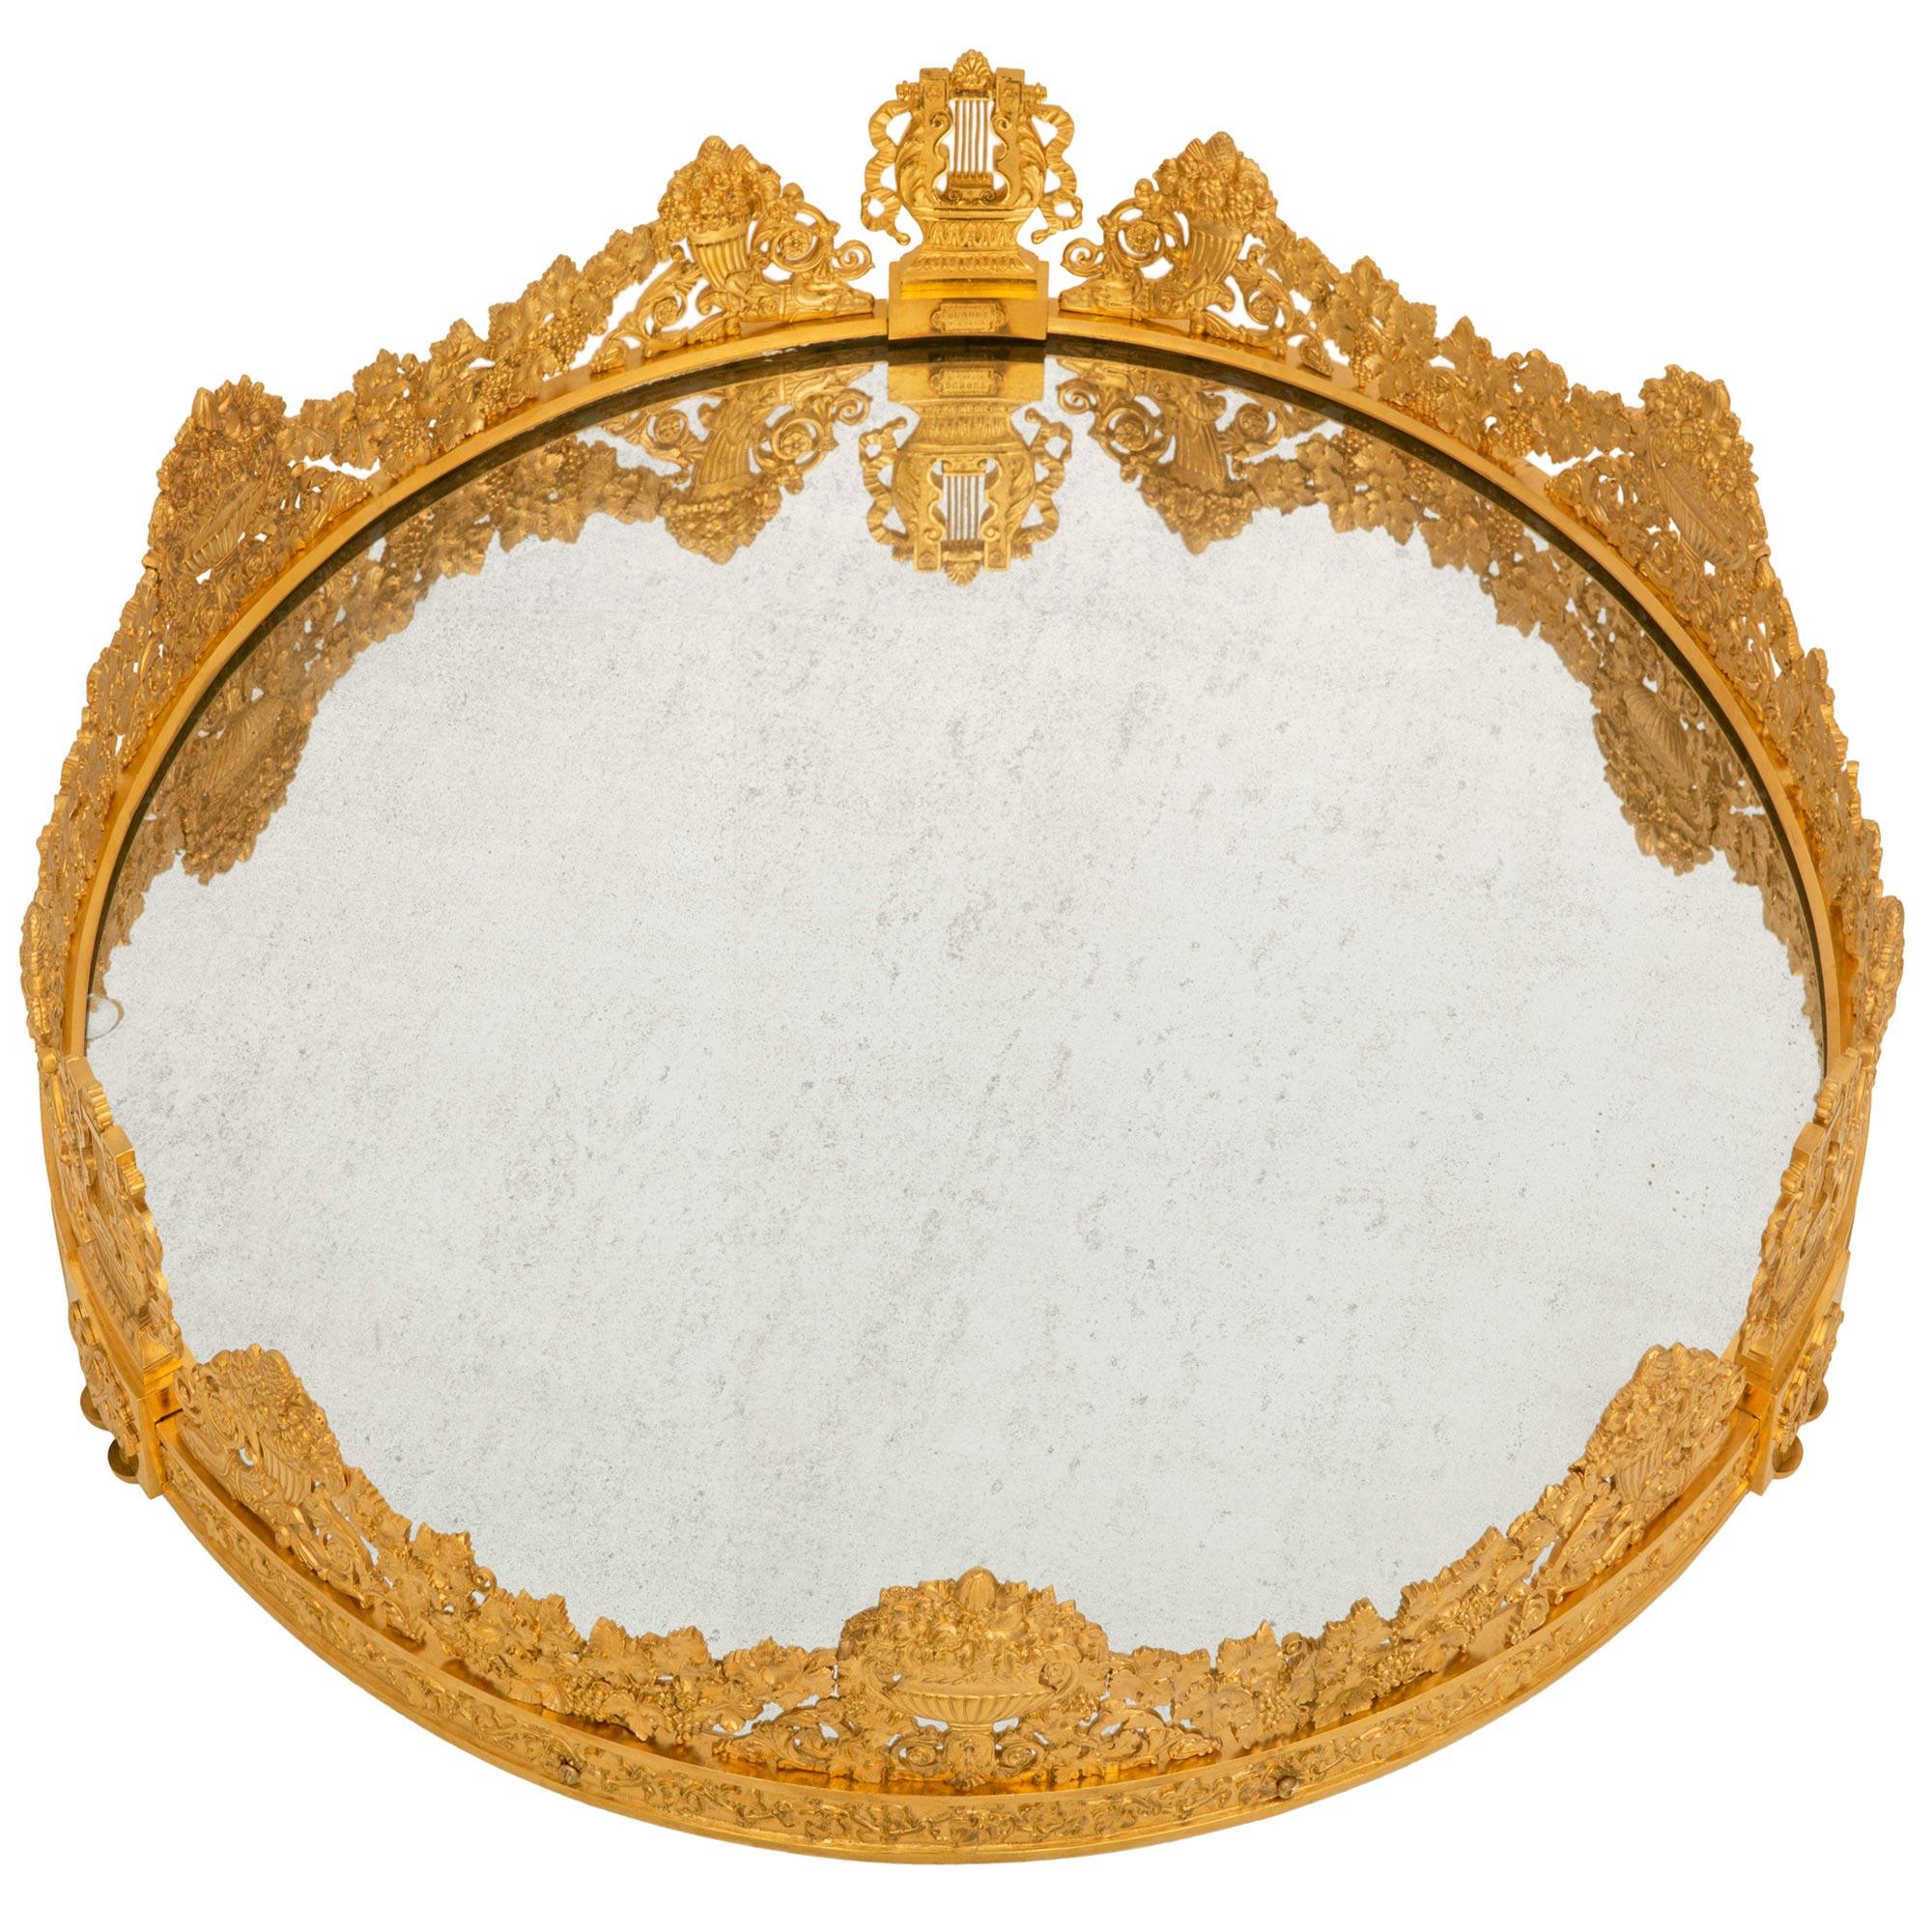 Très impressionnant et de grande taille, ce plateau d'époque Charles X en bronze doré et miroir, signé Dunouy Fait a Paris, est une pièce maîtresse de la collection française du XIXe siècle. Le Sur Tout de Table est surélevé par trois supports en